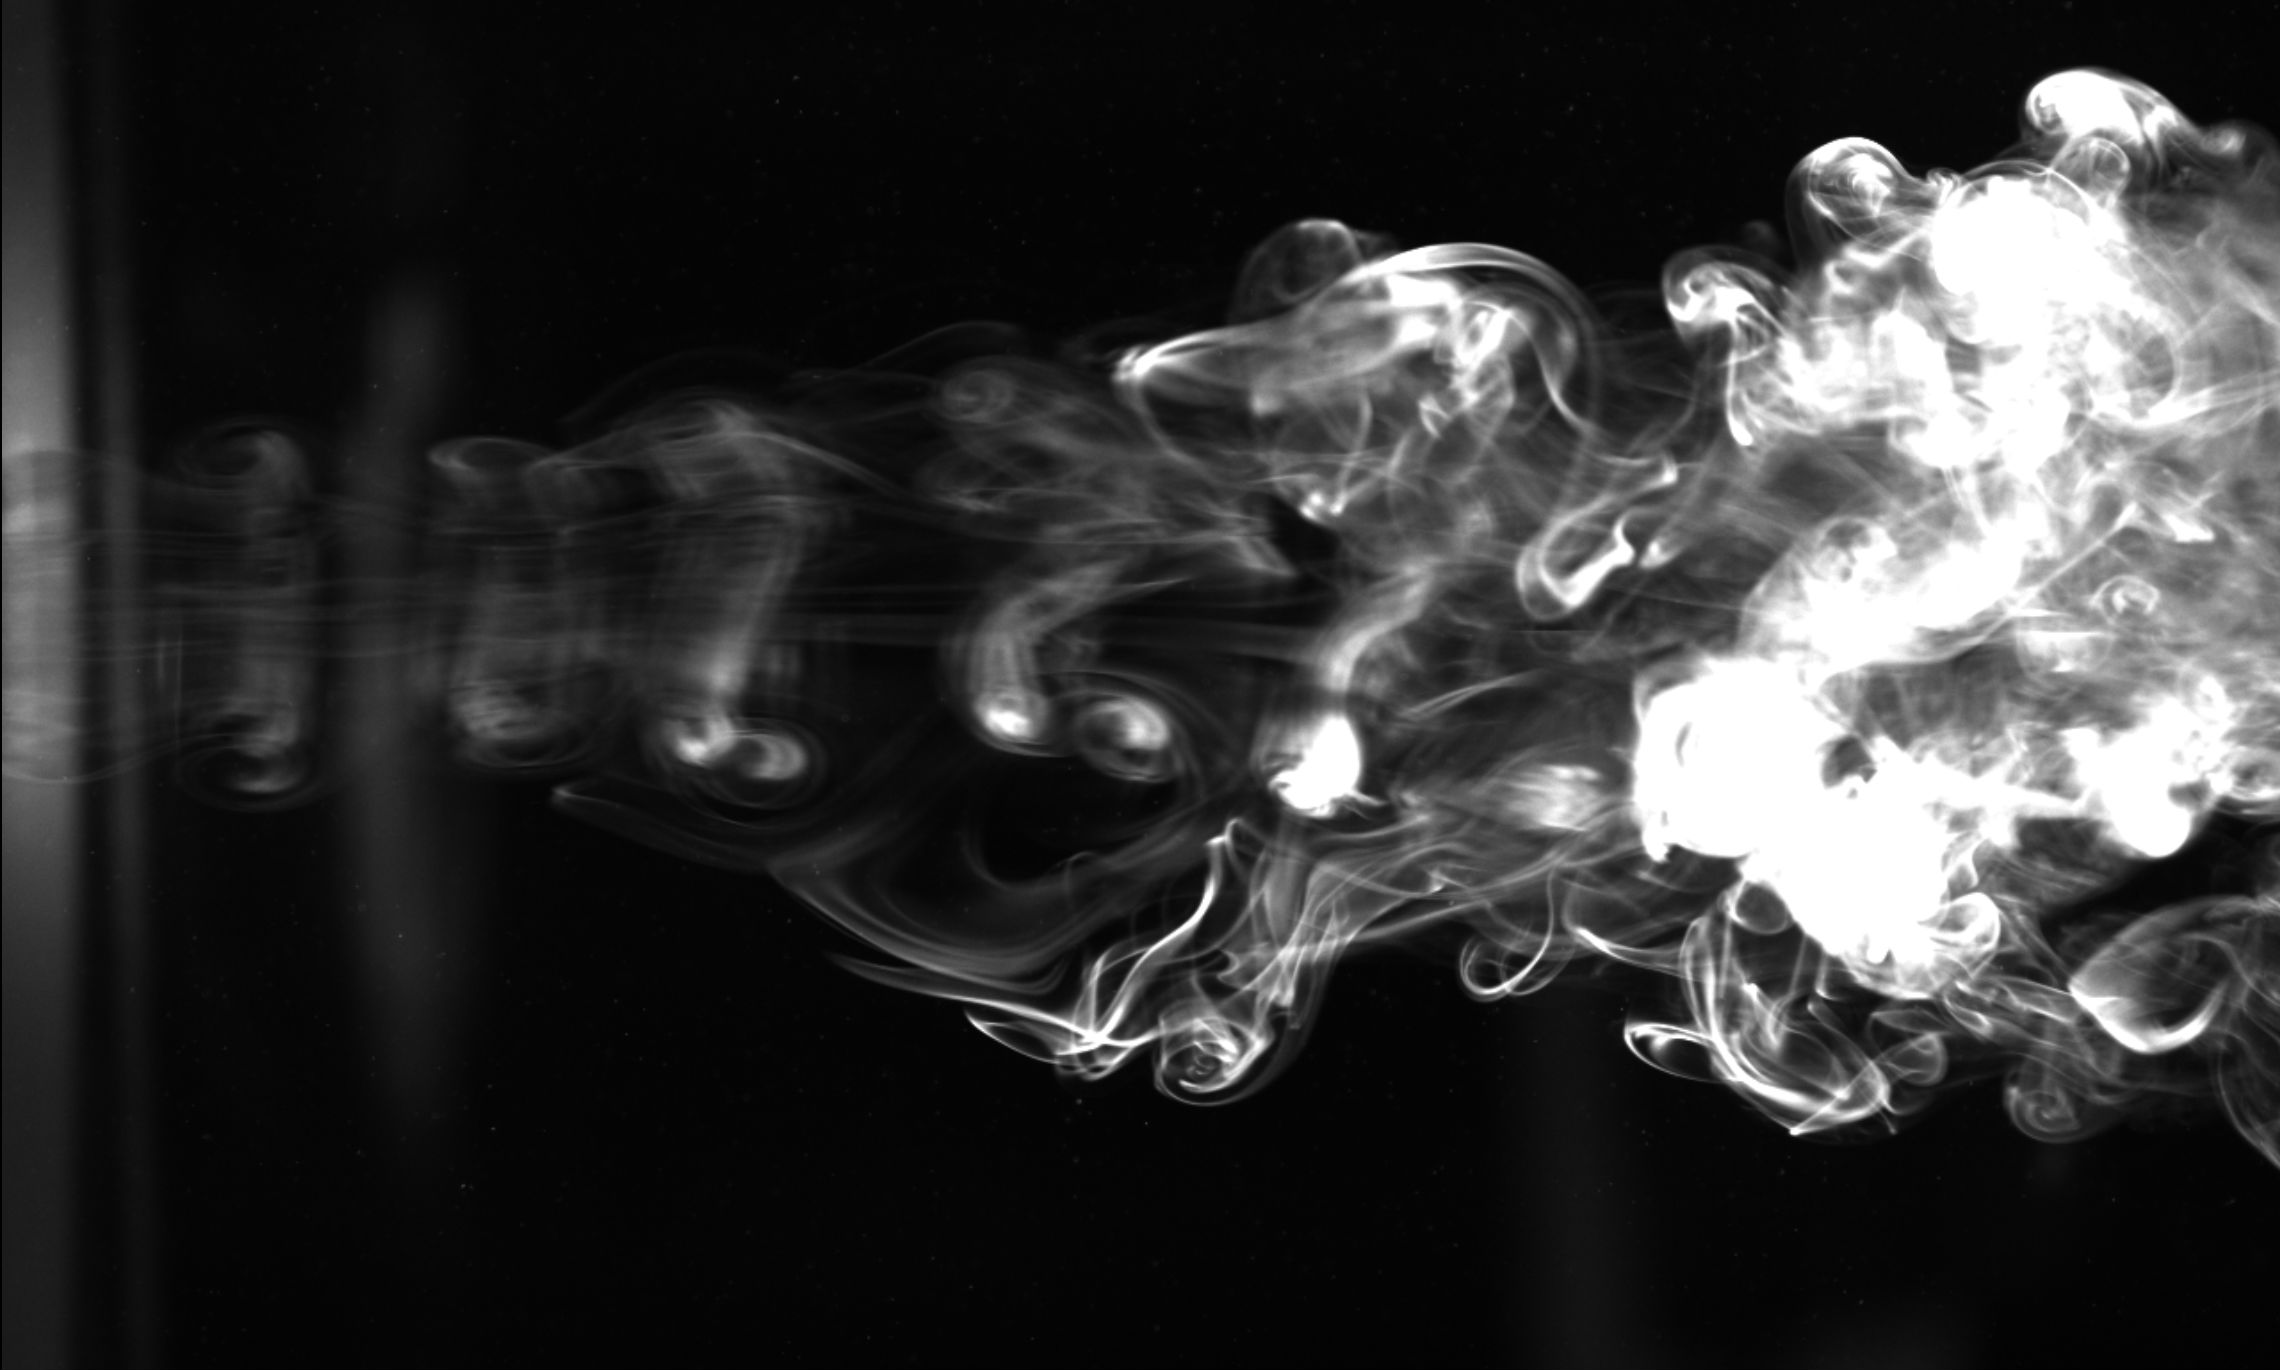 Turbulens, visualiseret ved hjælp af røg. Bevægelsen er fra venstre mod højre, hvor hvirvler udvikler sig til stadig mere kompleks turbulens.